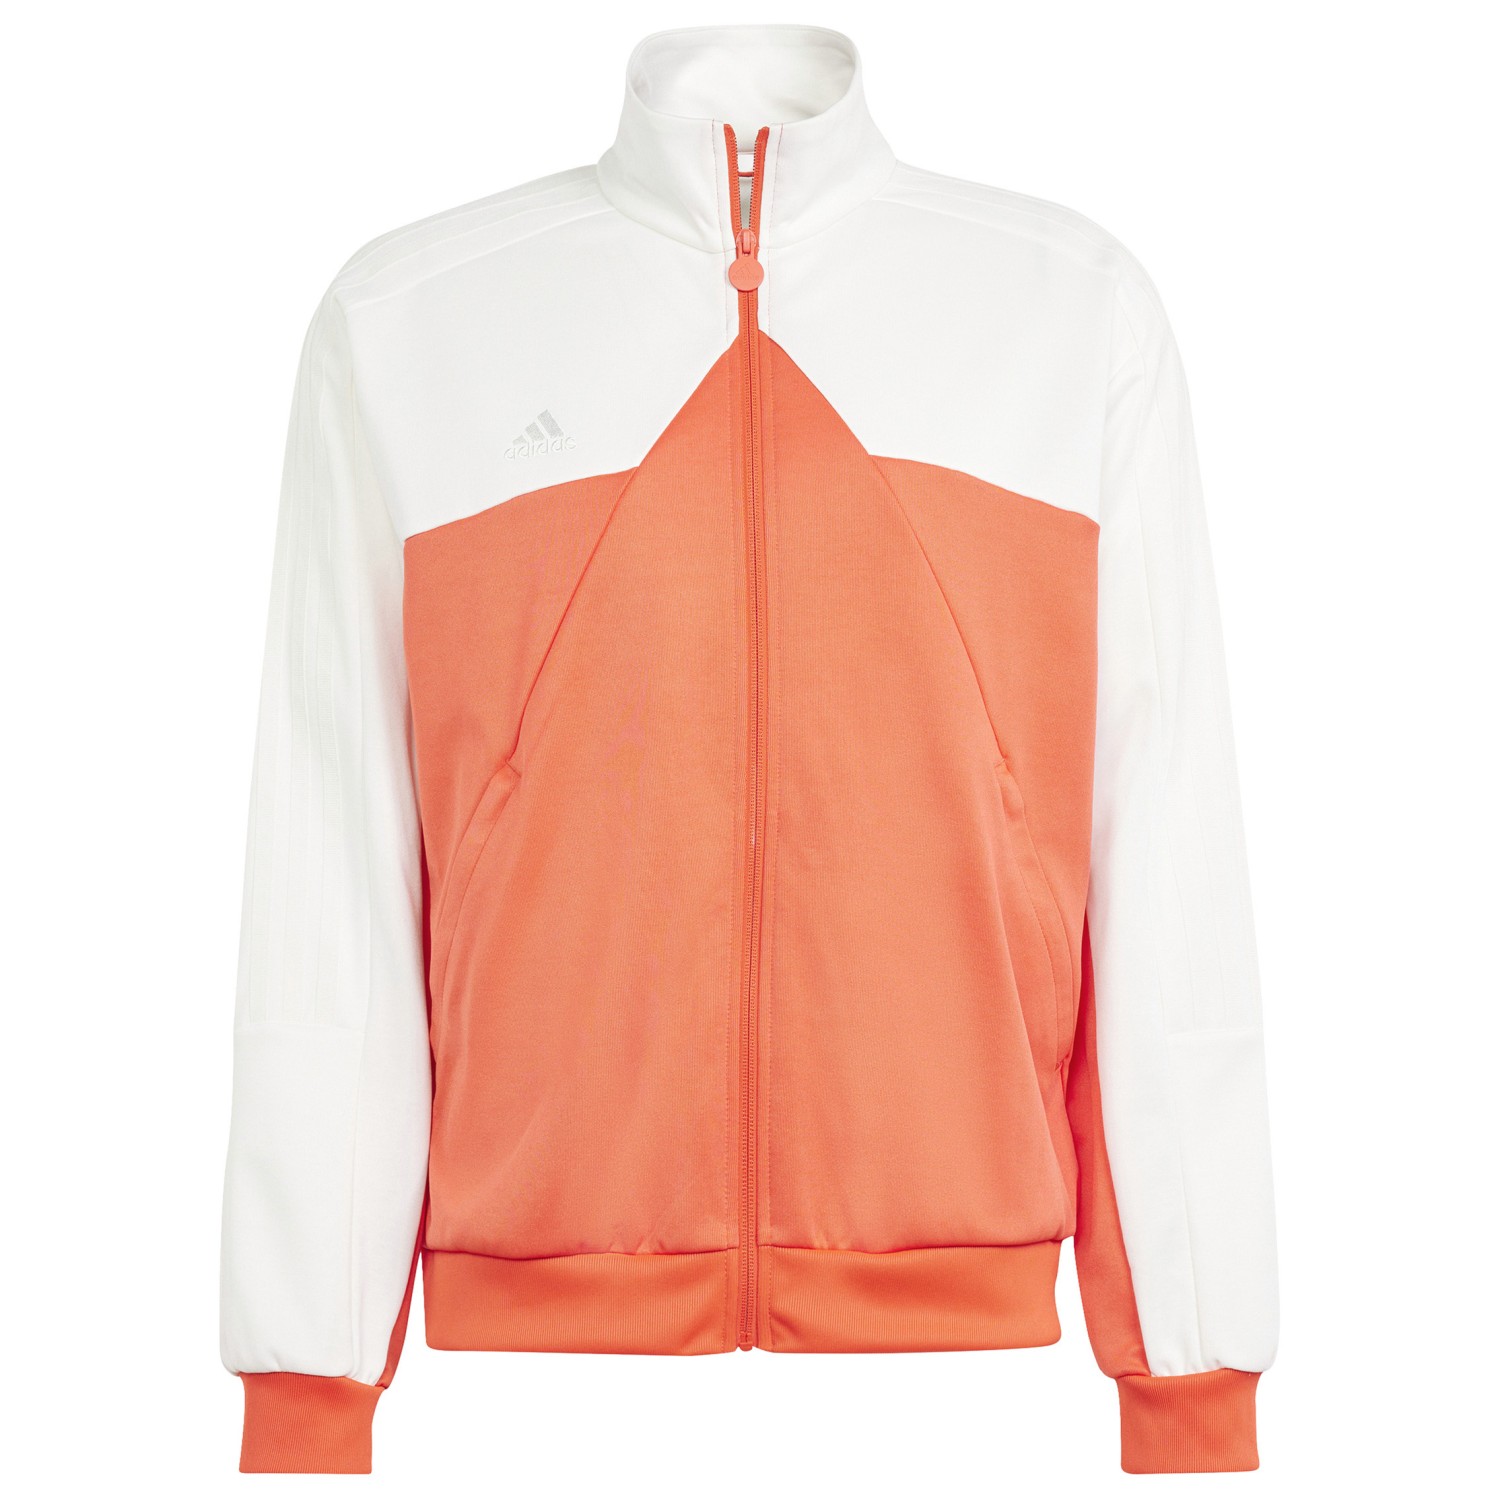 Спортивная и тренировочная куртка Adidas Tiro TT, цвет Off White/Bright Red спортивная куртка tiro 23 adidas белый